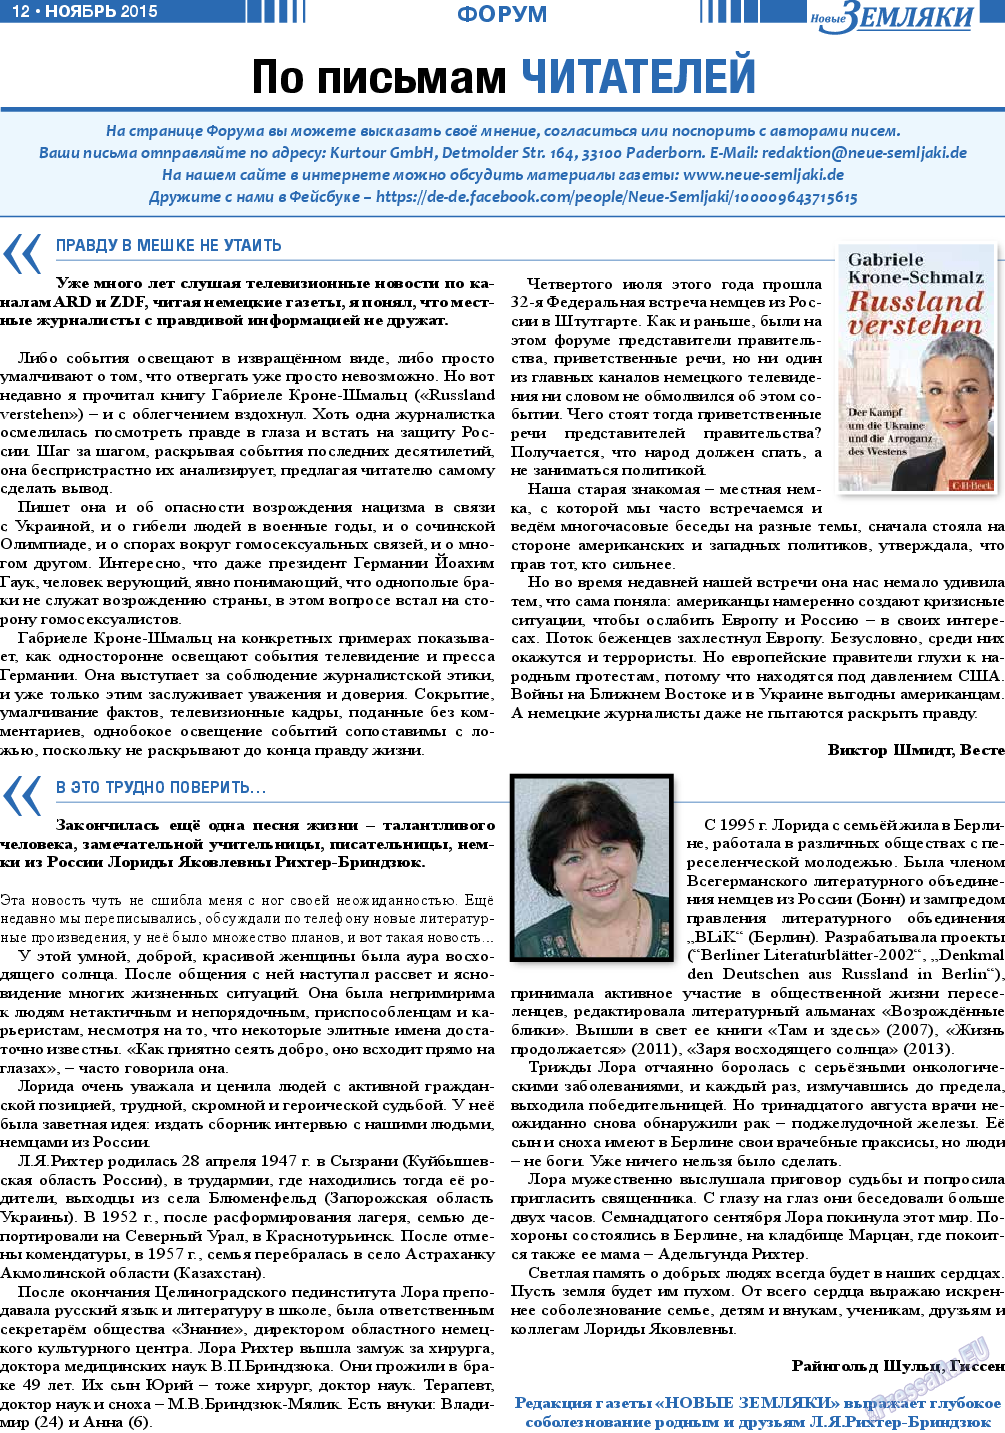 Новые Земляки (газета). 2015 год, номер 11, стр. 12